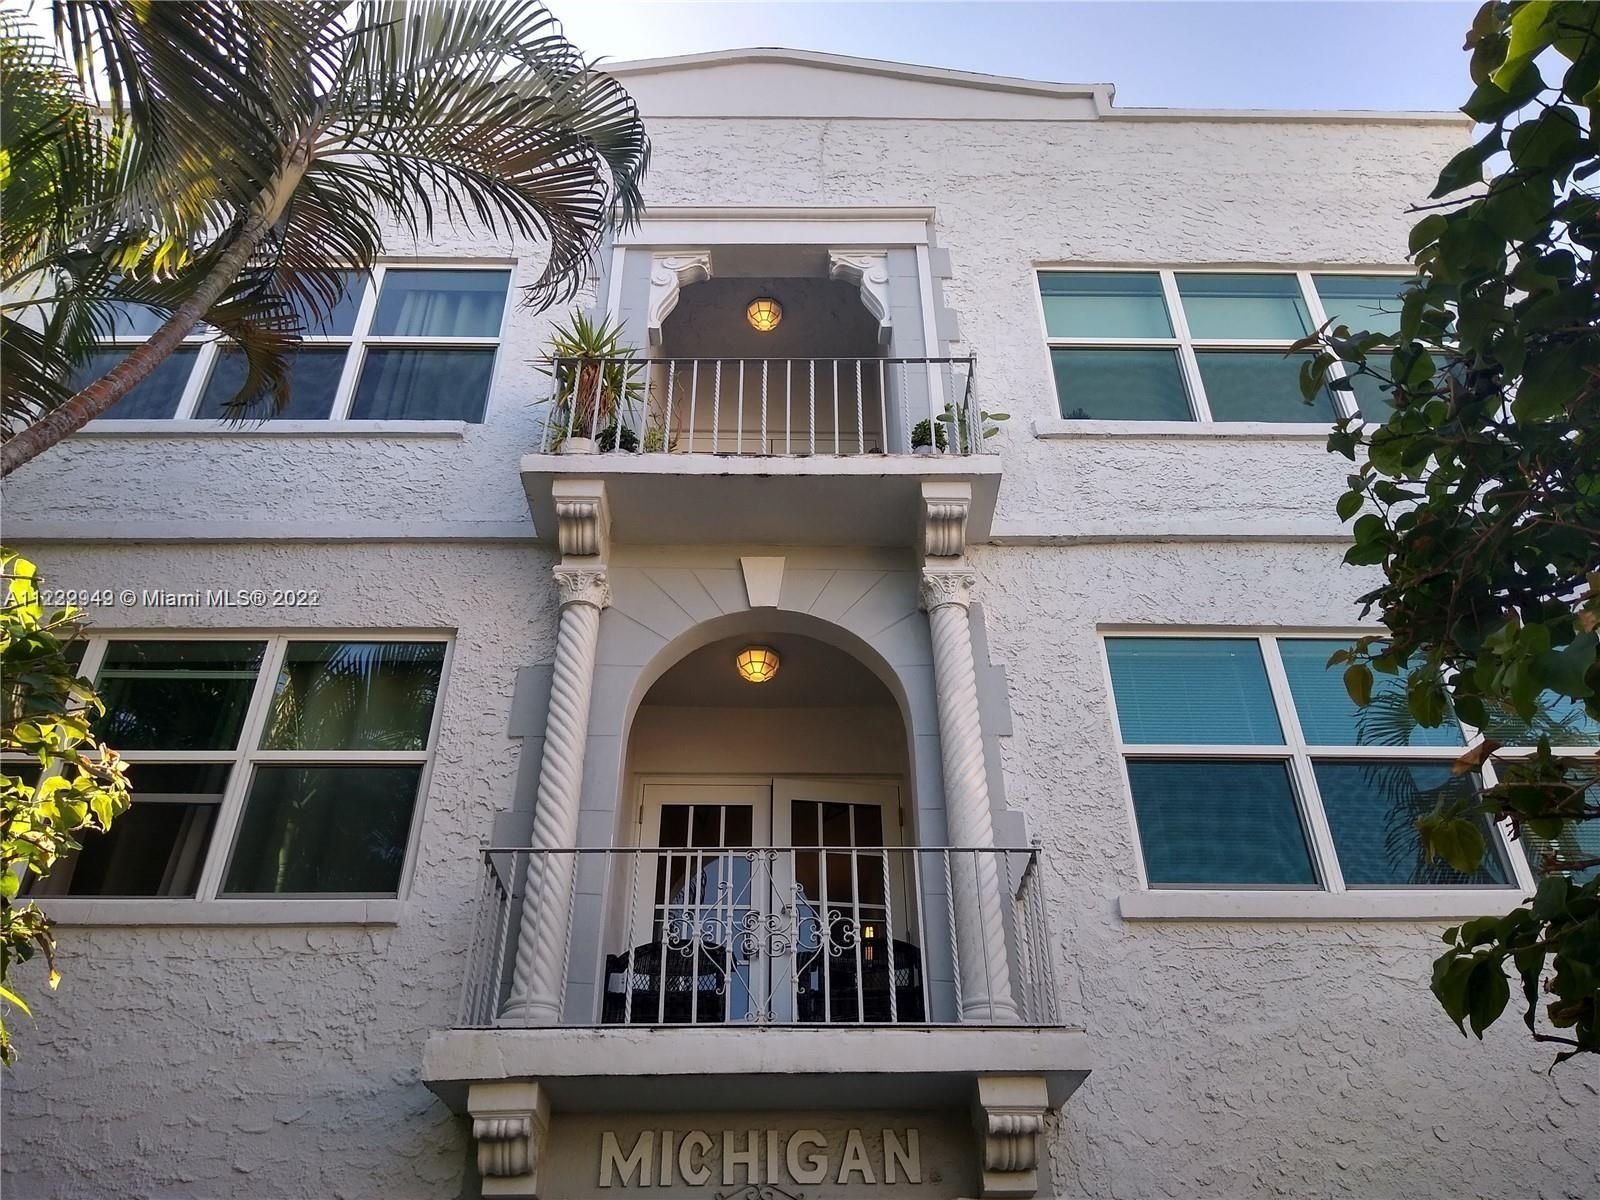 Real estate property located at 1618 Michigan Ave #6, Miami-Dade County, Miami Beach, FL